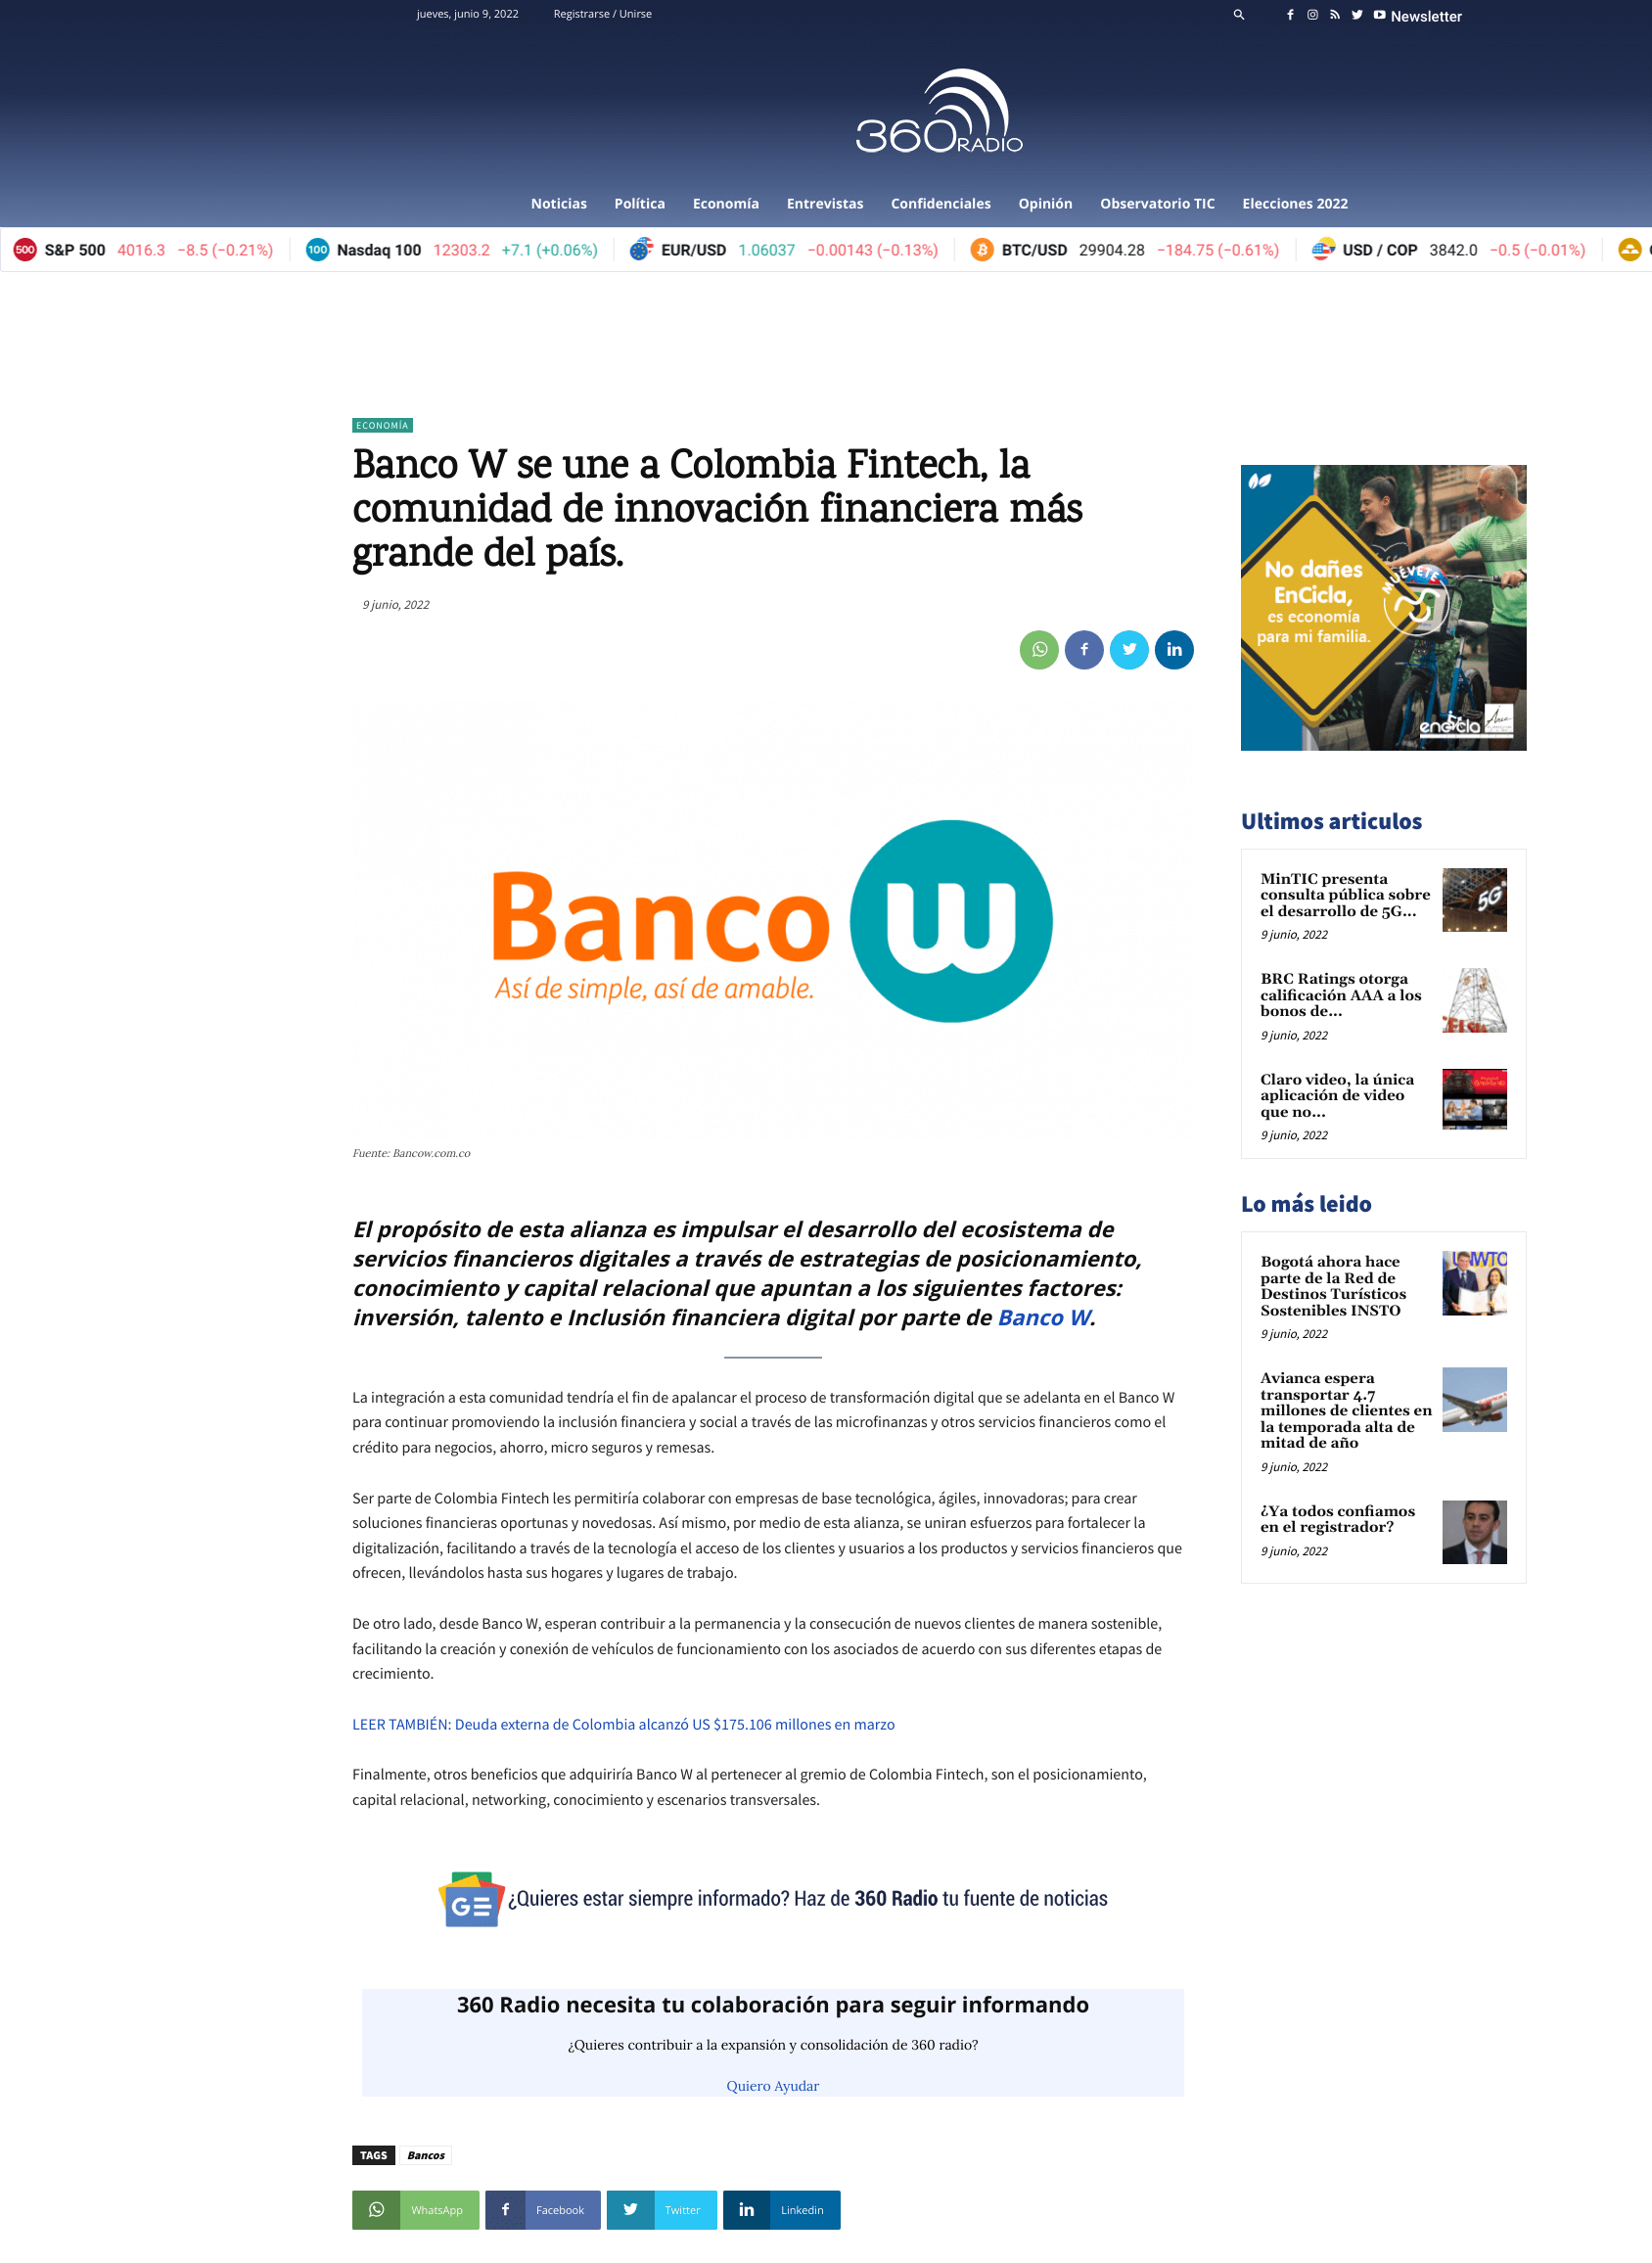 Banco W se une a Colombia Fintech, la comunidad de innovación financiera más grande del país.